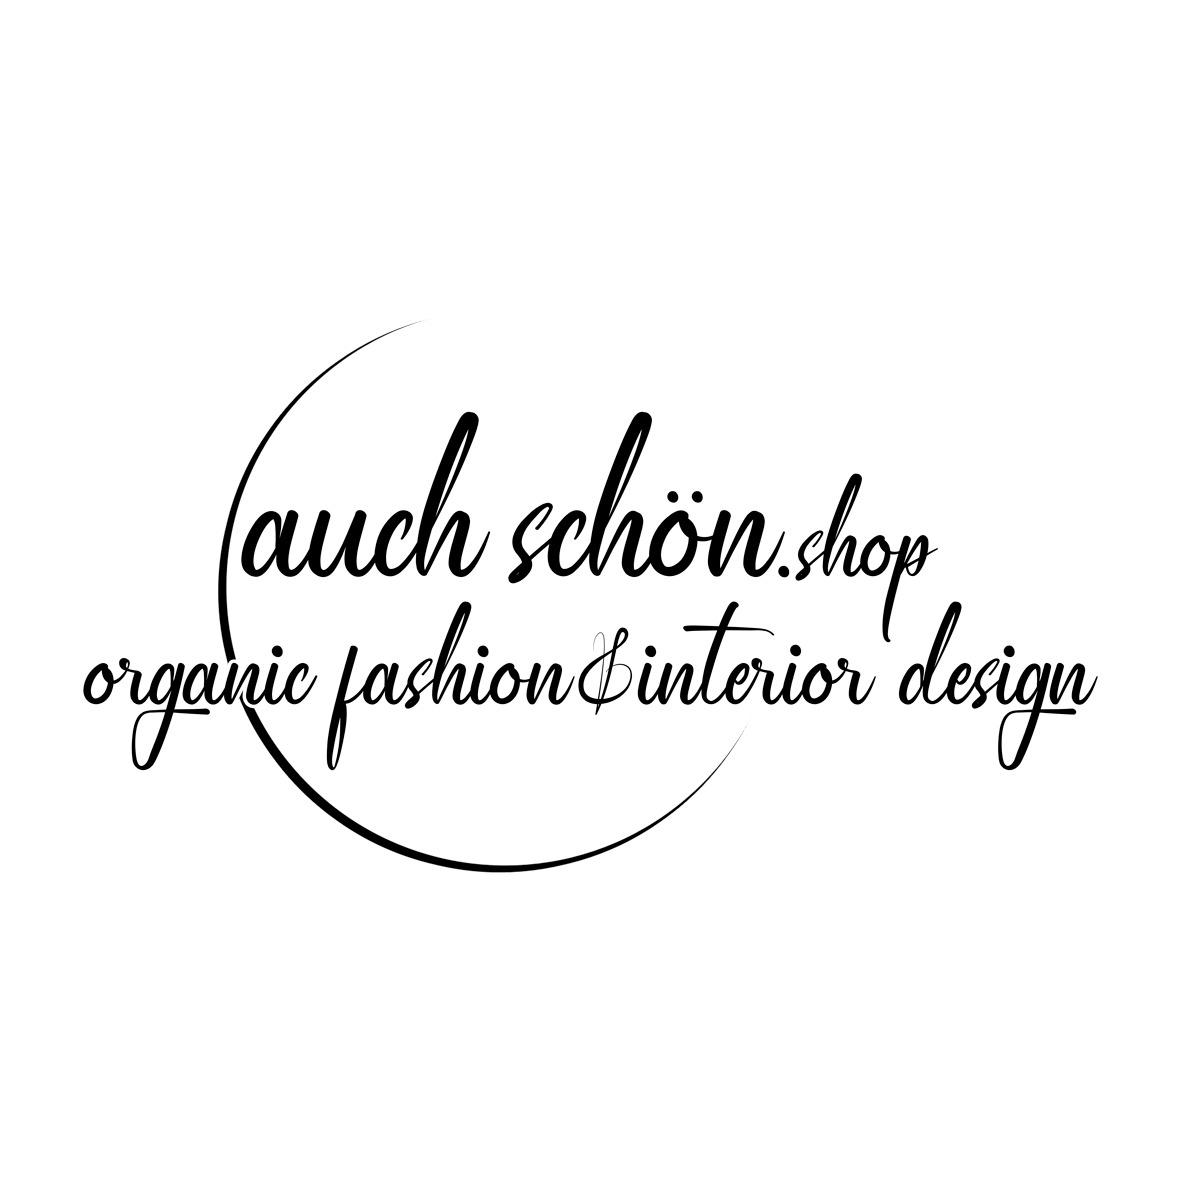 auch schön shop - organic fashion & interior design Logo